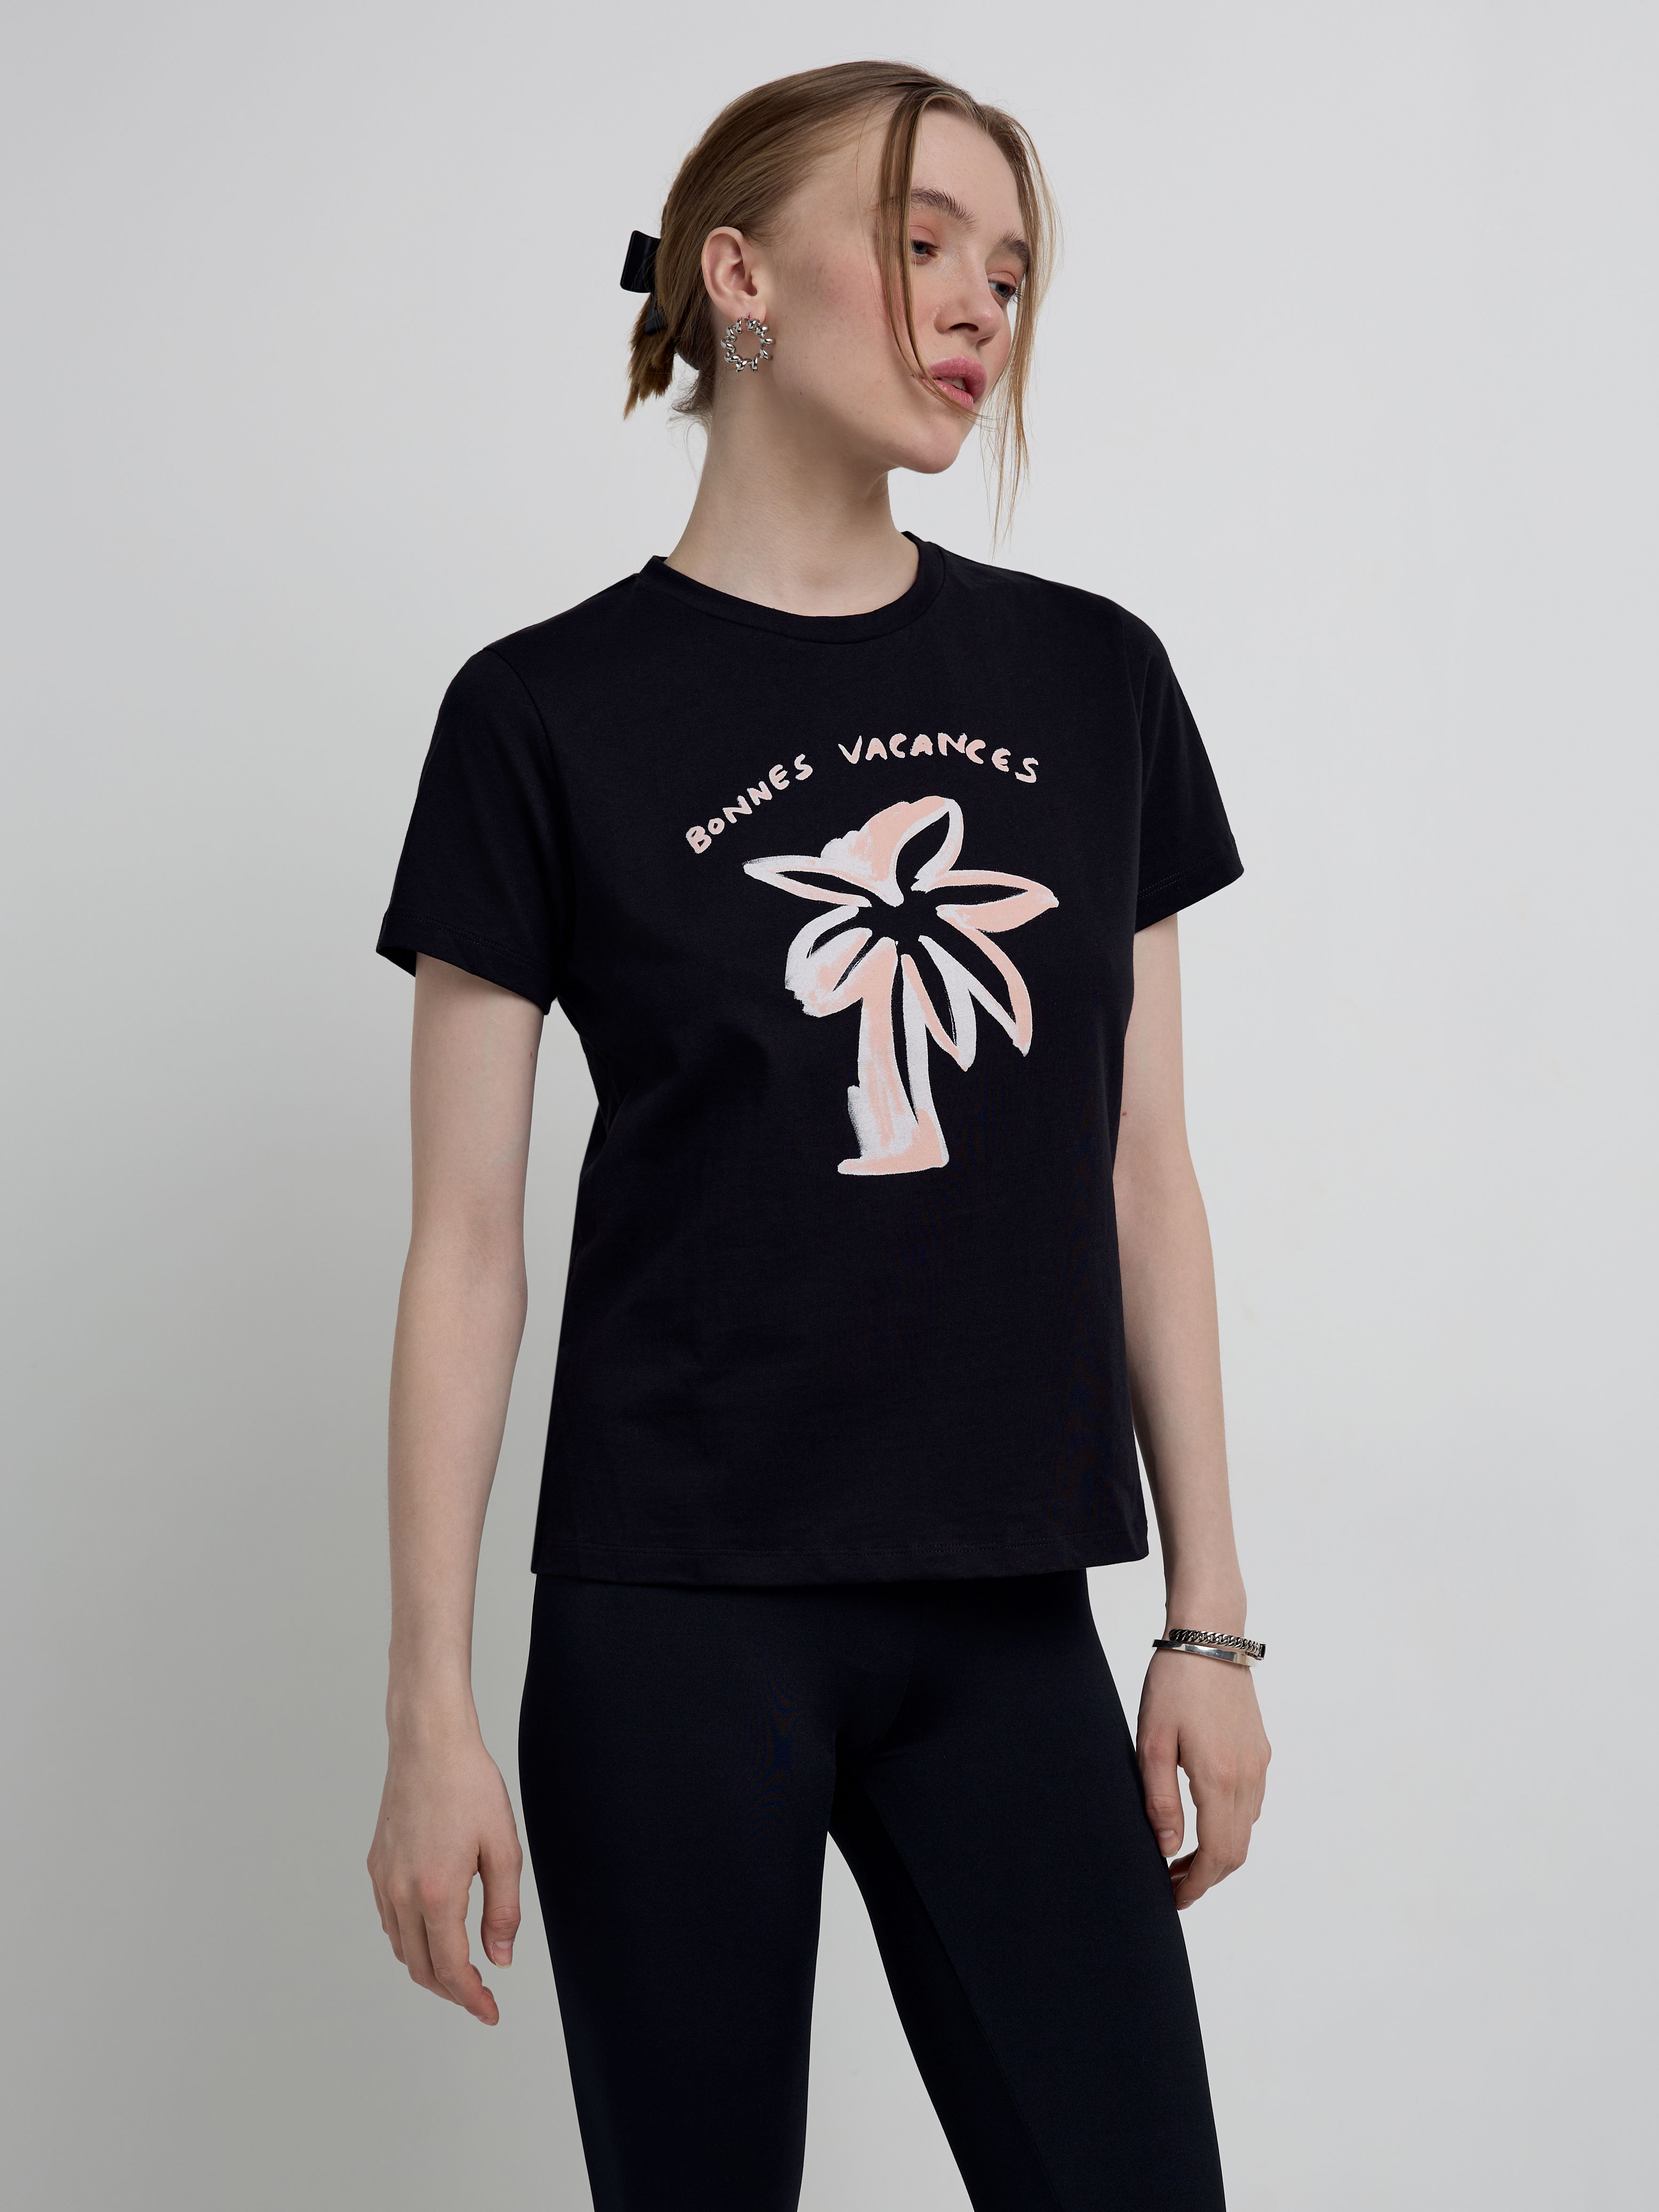 Базовая футболка из хлопка с рисунком «Bonnes vacances» LD 2123 Conte ⭐️, цвет black, размер 170-100/xl